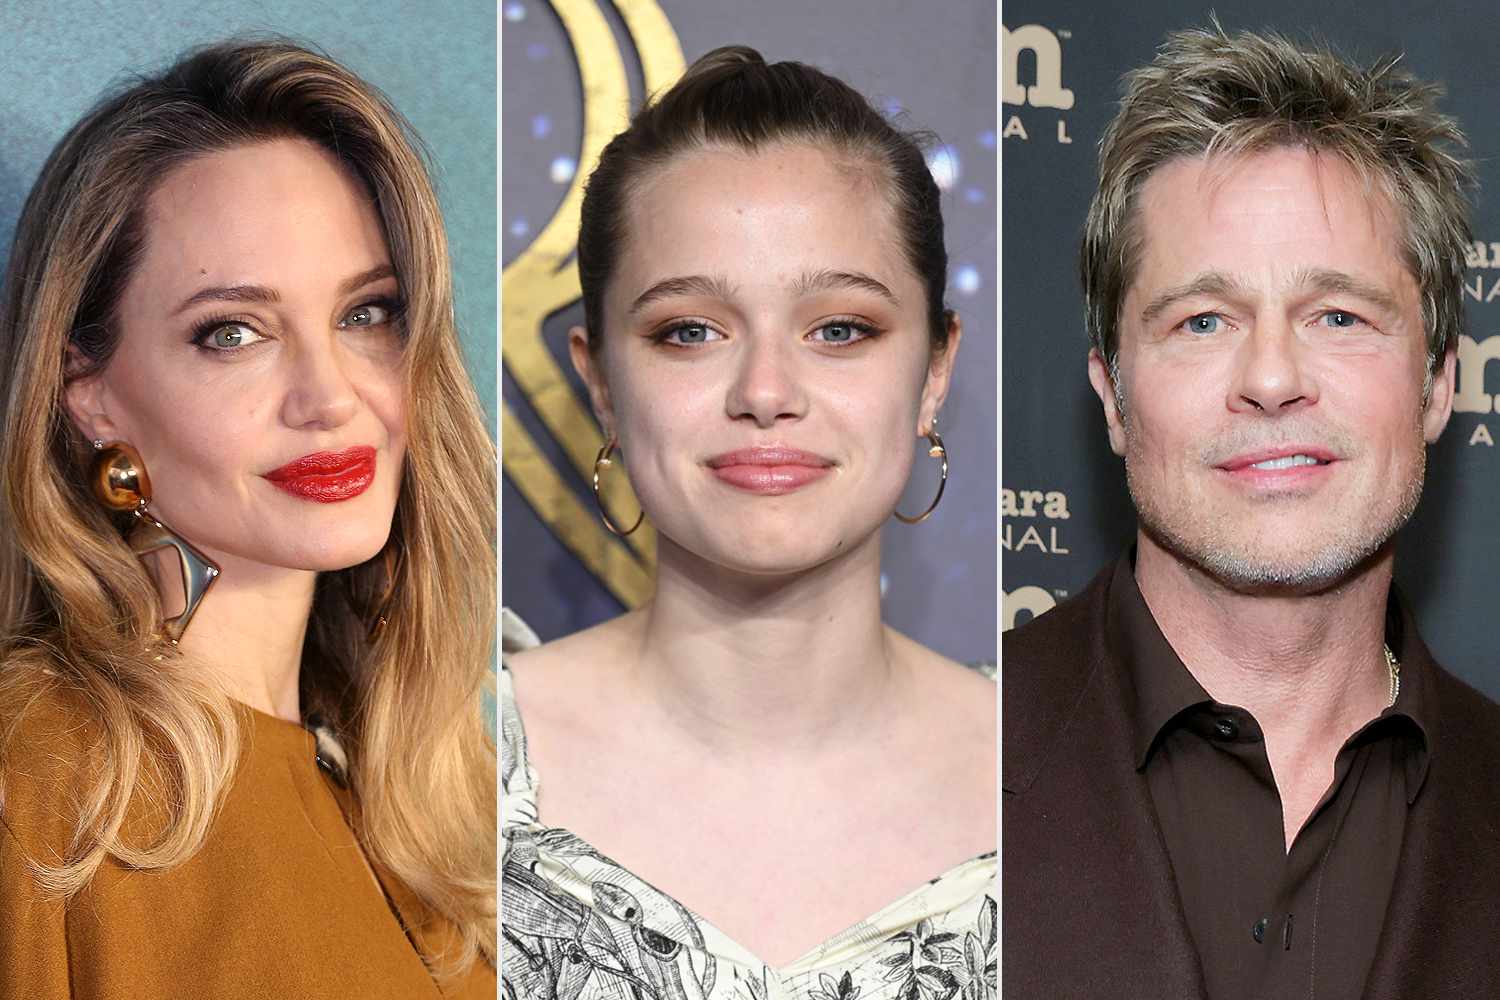 Filha de Angelina Jolie entra em processo para retirar sobrenome do pai, Brad Pitt